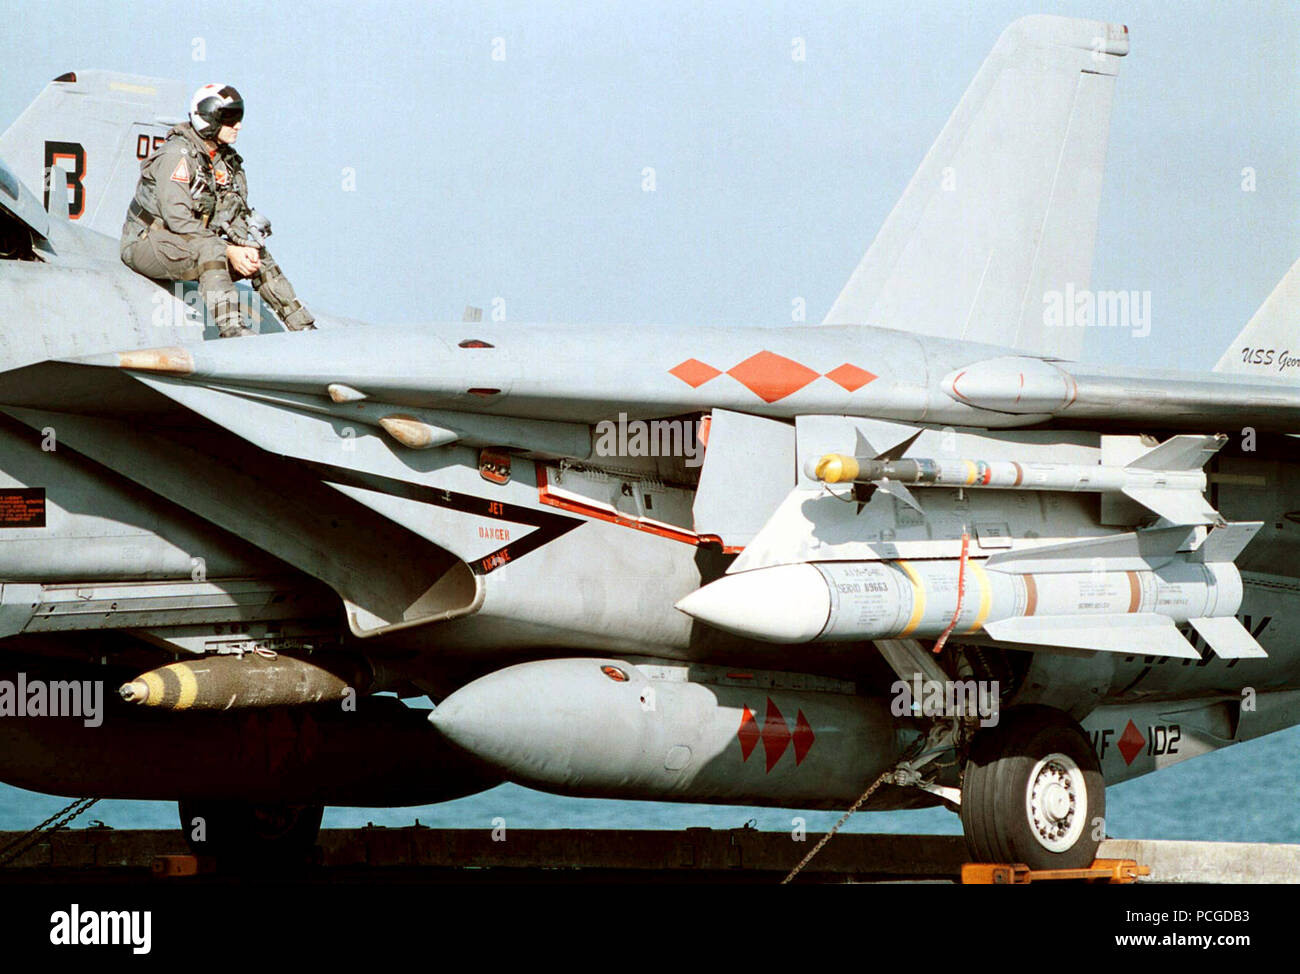 US Navy Lieutenant Steve Nevarez nimmt eine kurze Pause vom Stress des Flight Deck Operationen auf einer F-14B Tomcat Strike Fighter, Fighter Squadron eine Null Zwei (VF-102). Flugzeug ist bewaffnet mit einem AIM-9L Sidewinder kurze Reichweite, IR (Infrarot)-Rakete in die Luft; Ziel-54 C Phoenix long range Radar geführte, Luft-zu-Luft Raketen und eine Mk 82 500 lb. Bombe. Die Atomgetriebenen Flugzeugträger GEORGE WASHINGTON (CVN 73) und VF-102 sind derzeit die Durchführung von Operationen im Persischen Golf zur Unterstützung der UN-Sanktionen gegen den Irak. Operation SOUTHERN WATCH, 2. Dezember 1997. Stockfoto